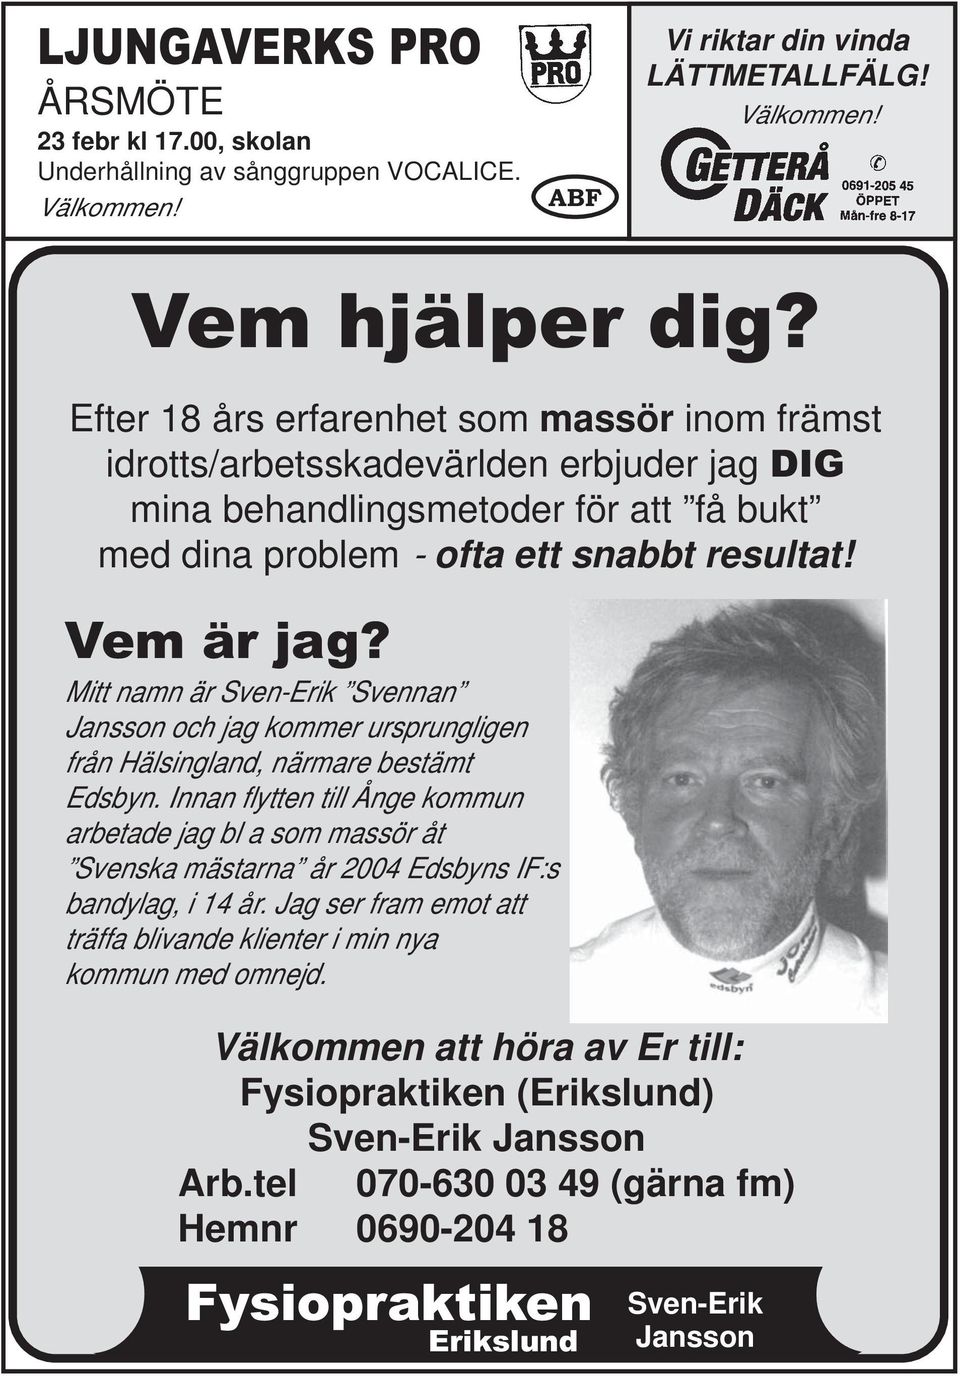 Mitt namn är Sven-Erik Svennan Jansson och jag kommer ursprungligen från Hälsingland, närmare bestämt Edsbyn.